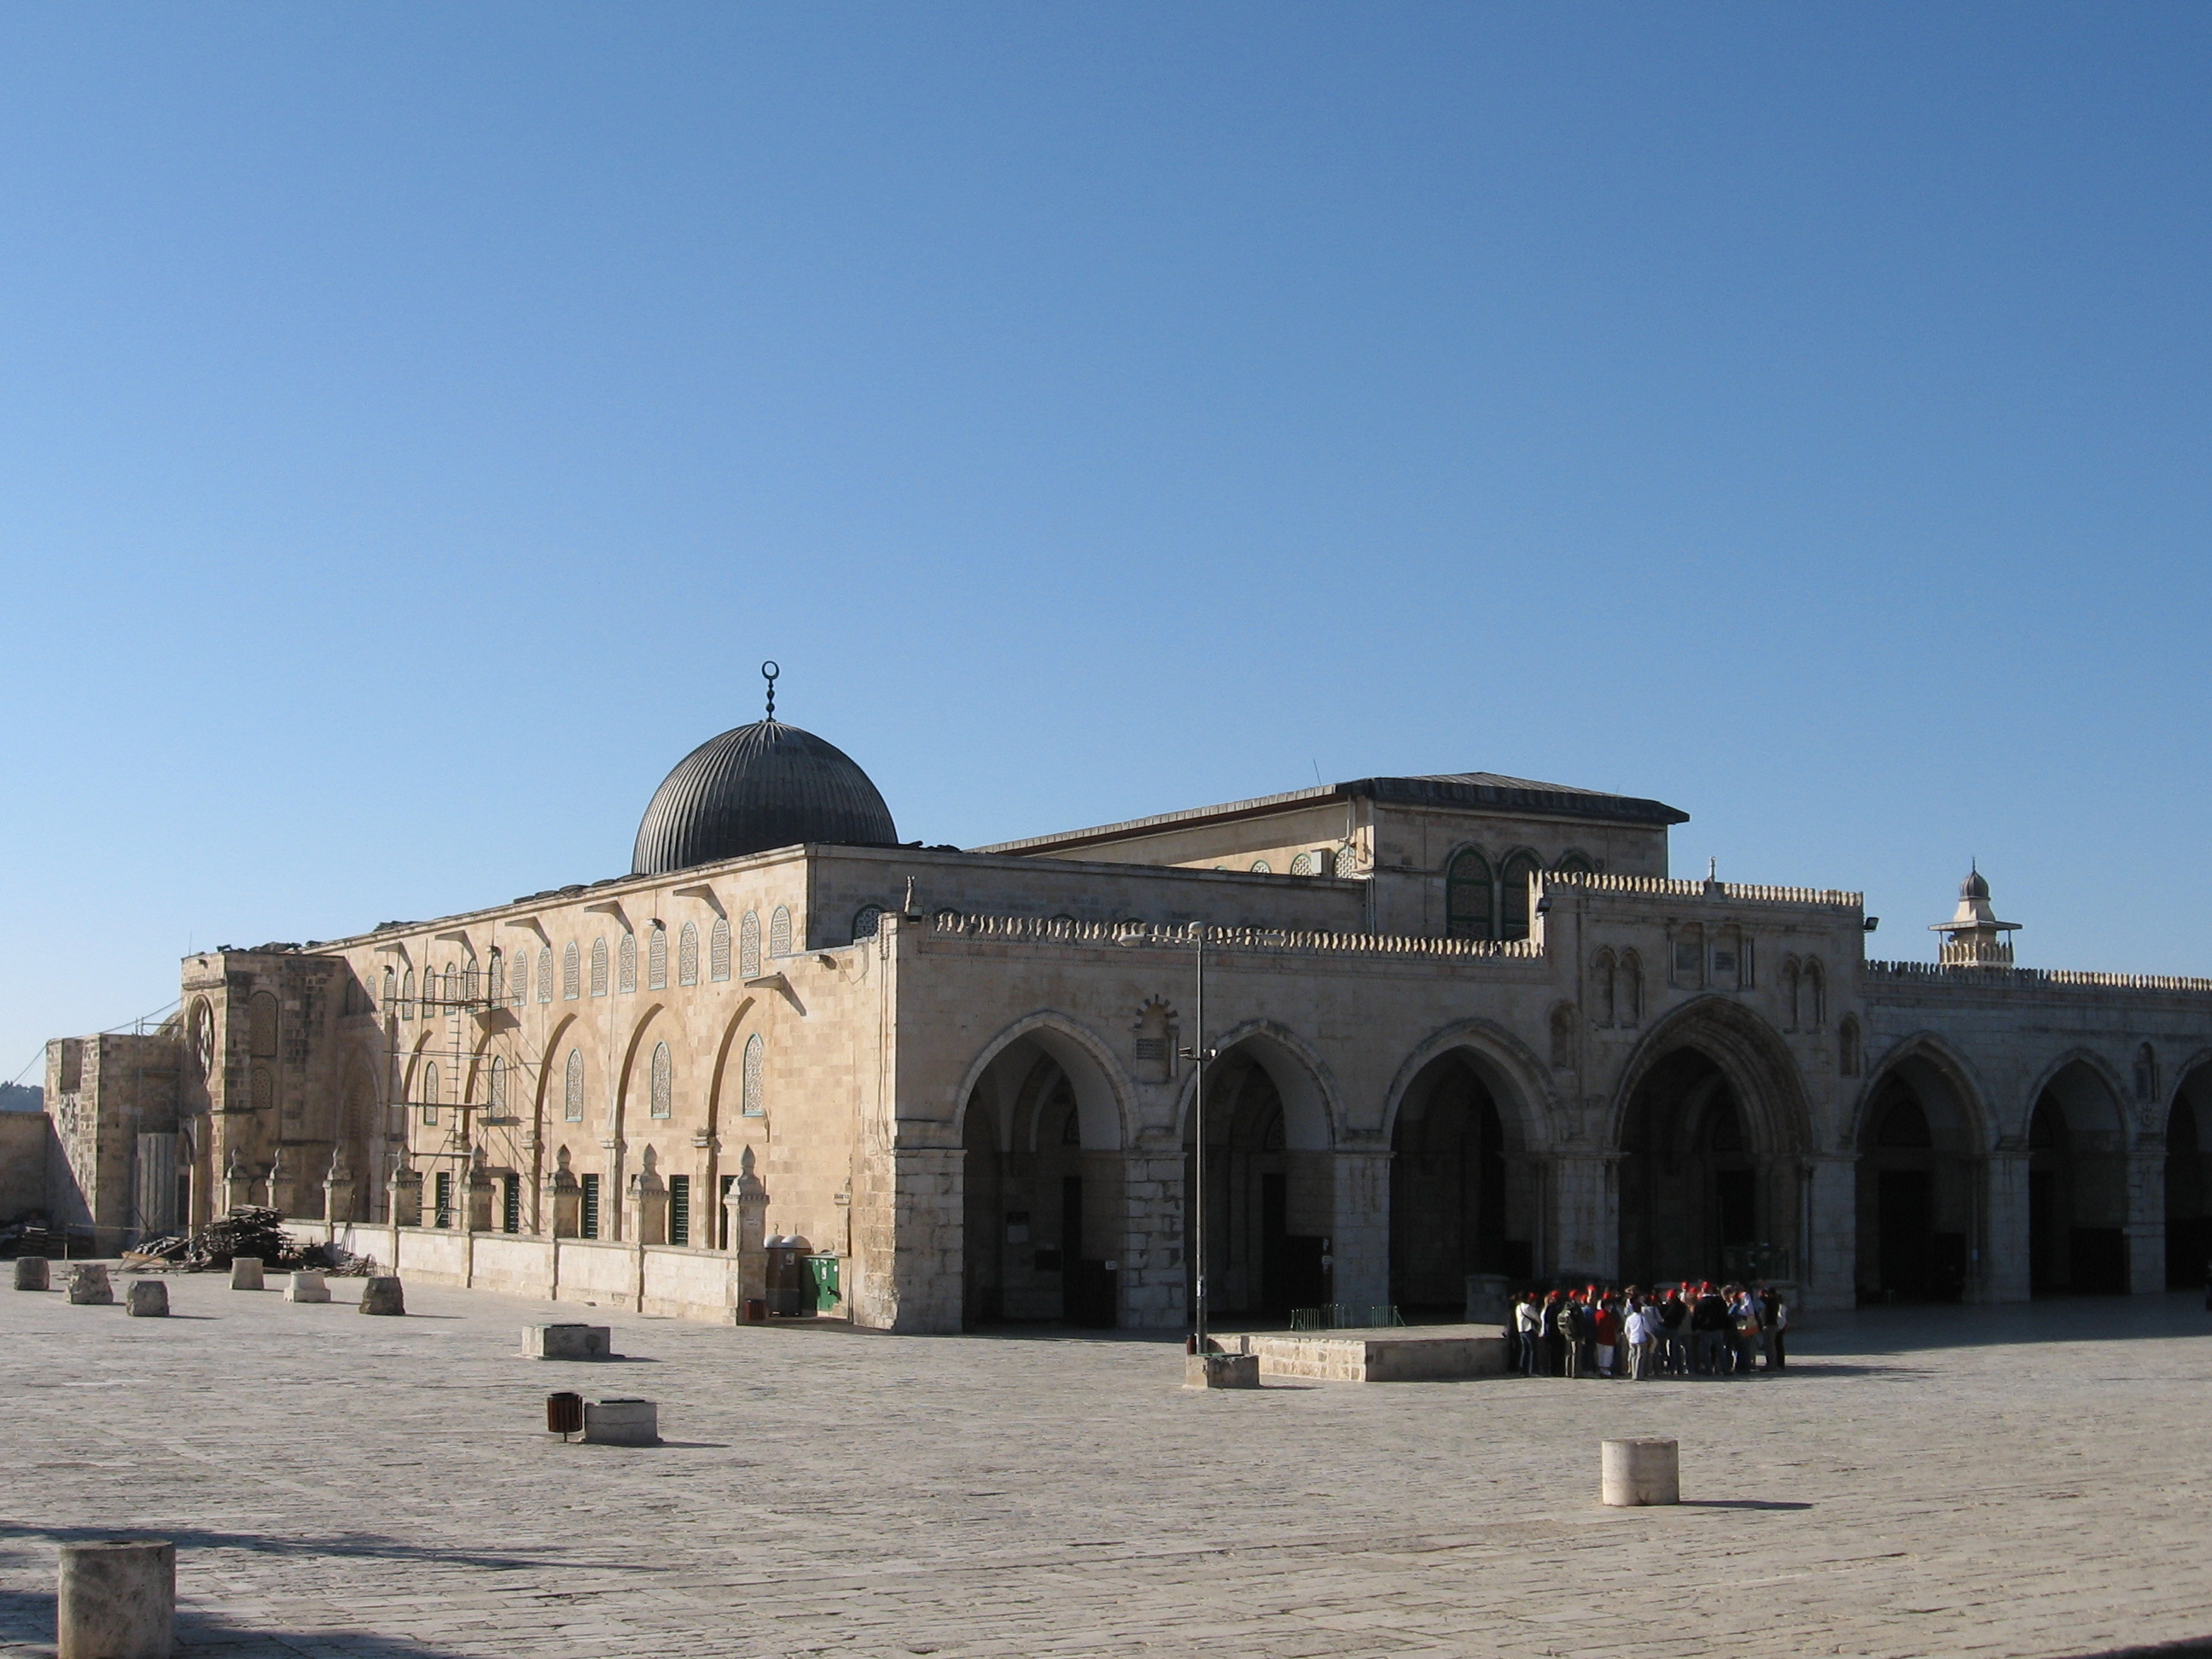 مجلس أوقاف القدس يقول بأن تغيير الوضع القائم في الأقصى انتهاك صارخ  لحقوق المسلمين